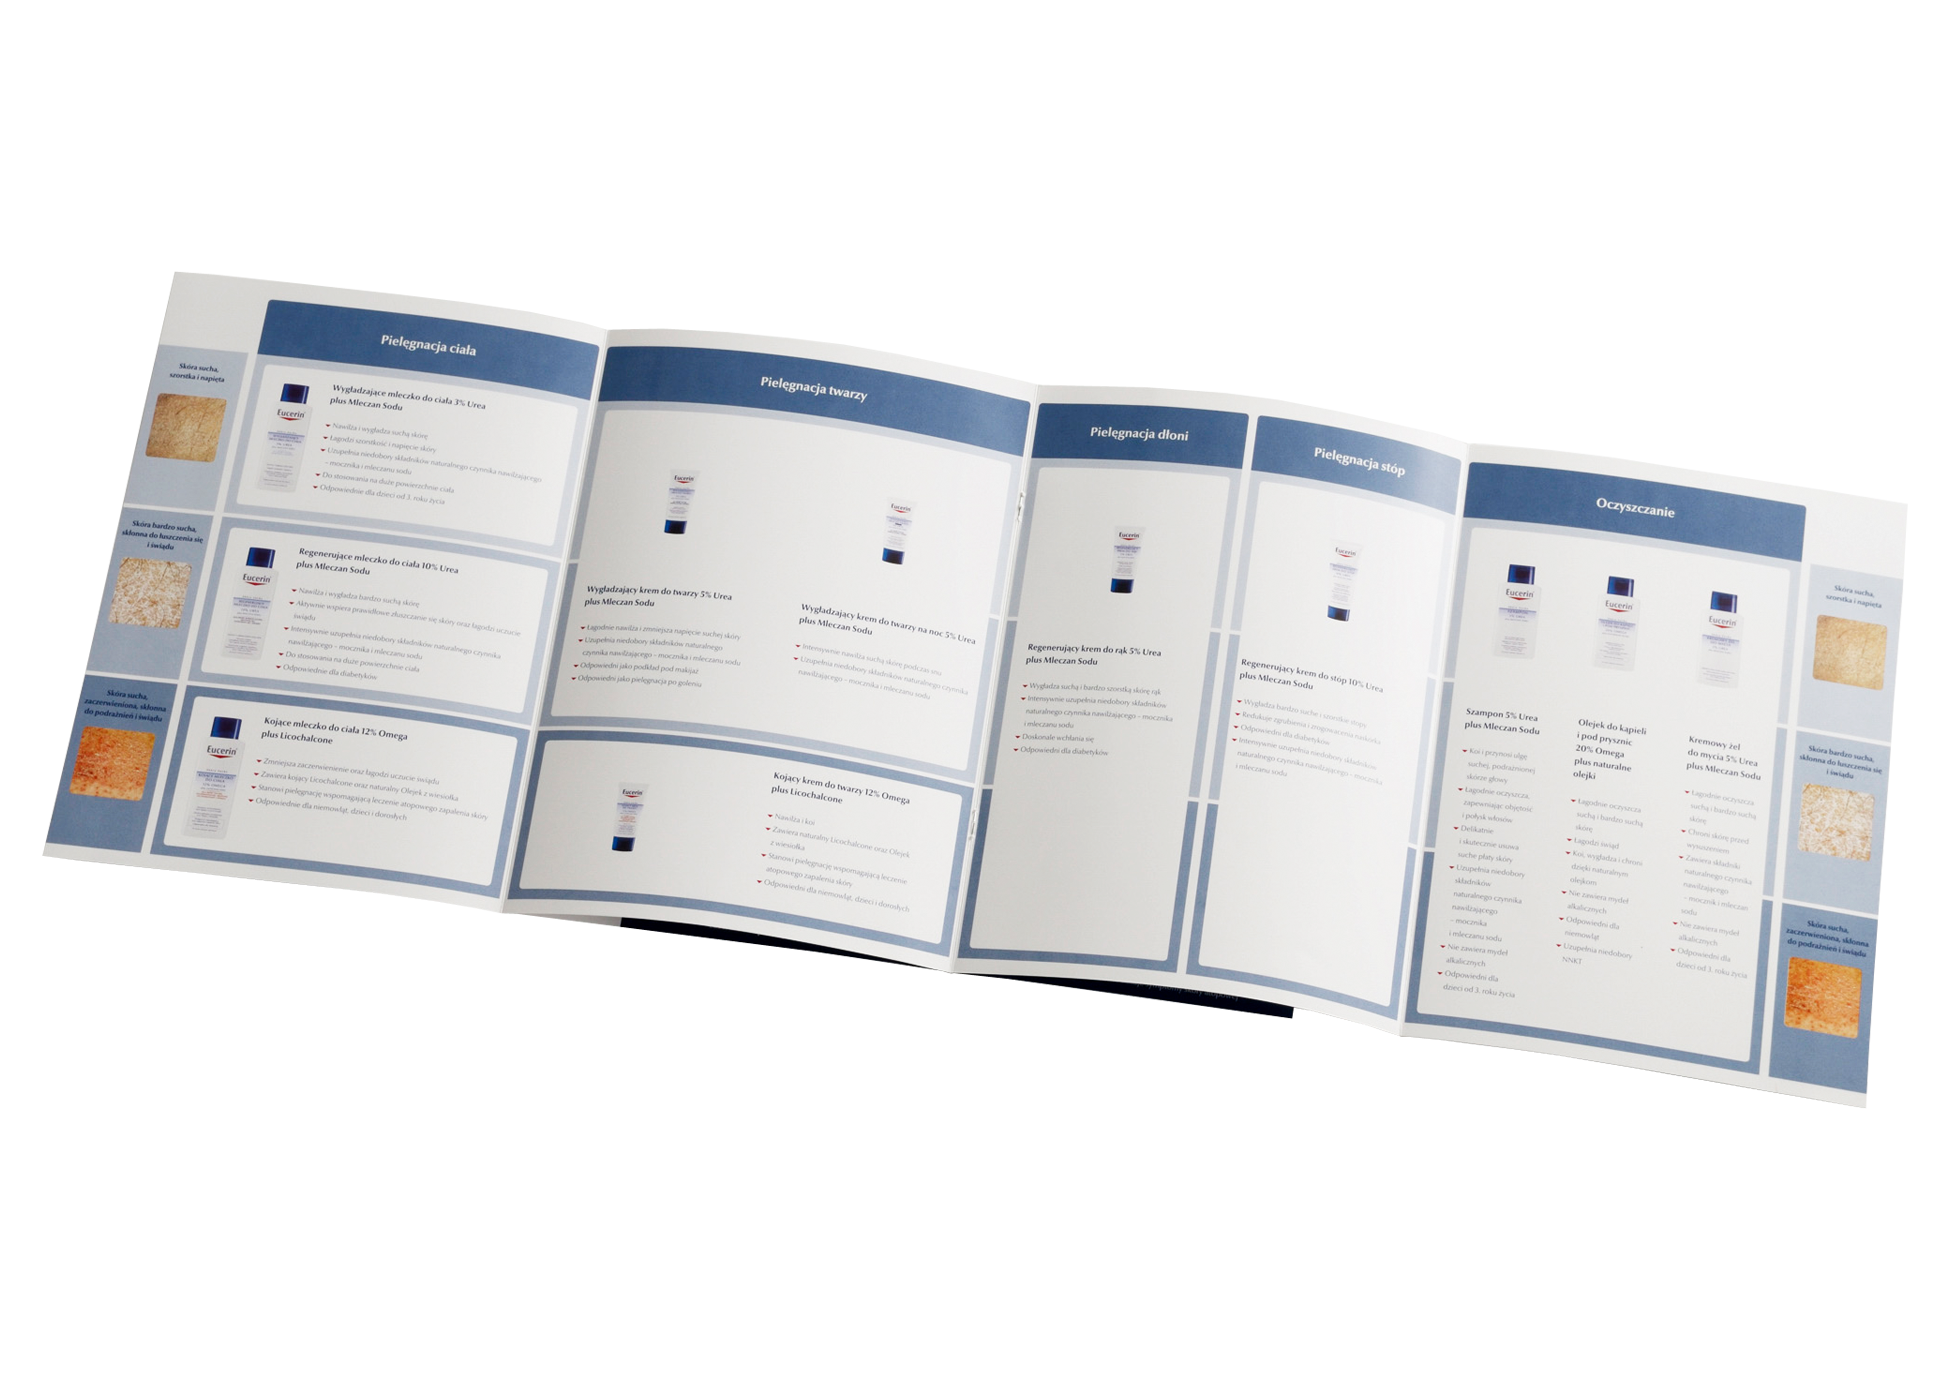 EUCERIN - broszura produktowa/ulotka produktowa z próbką